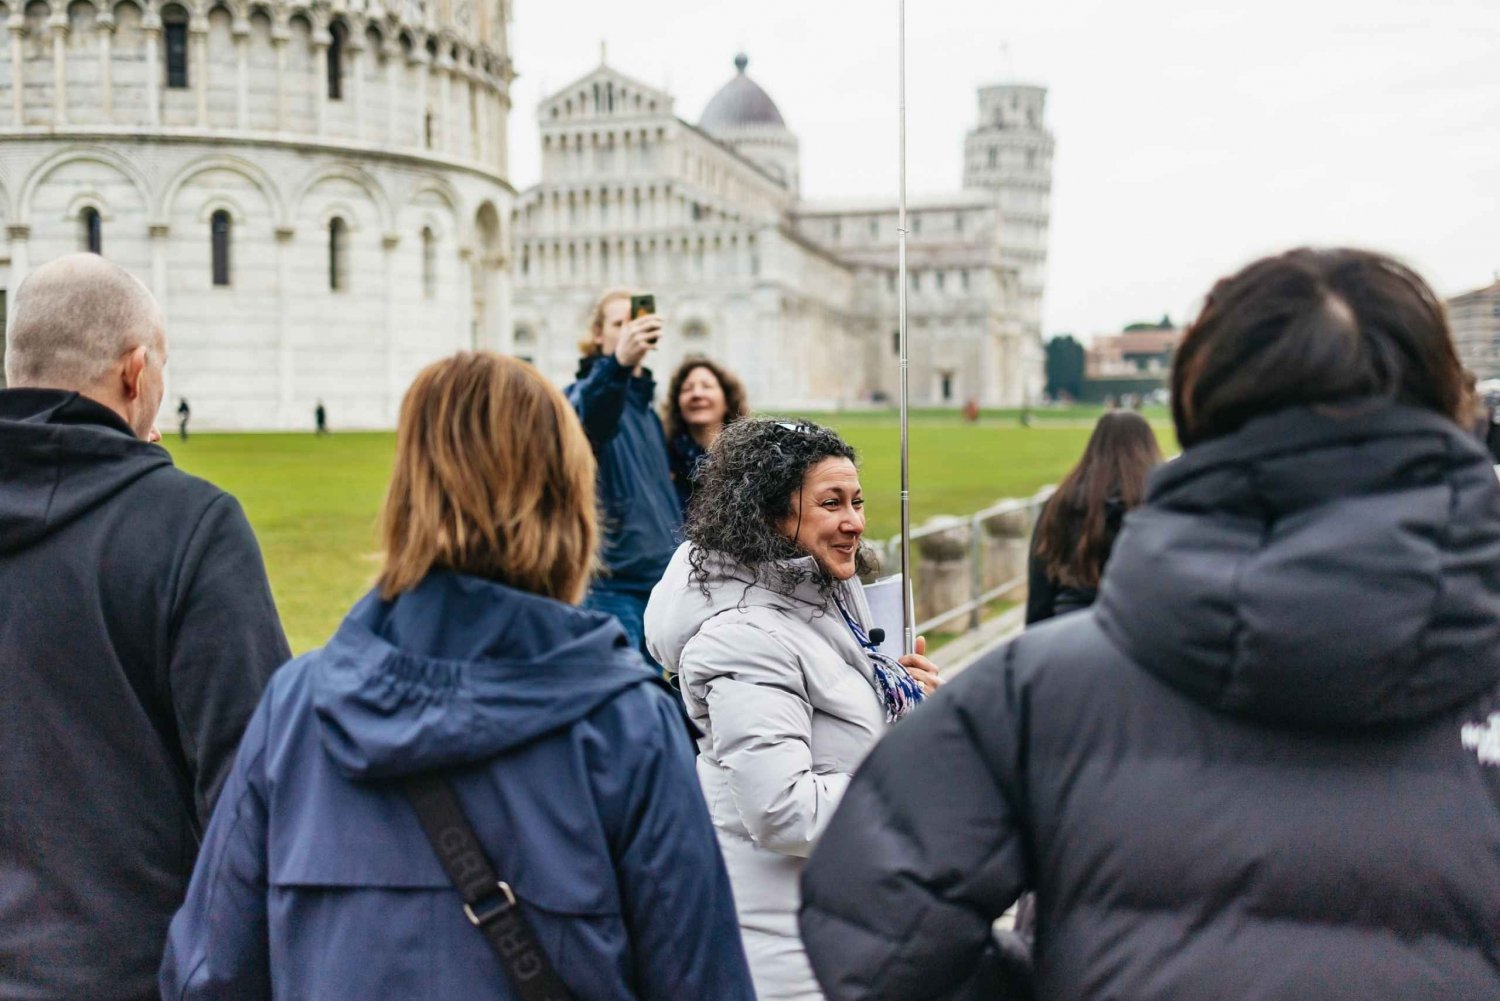 Firenze: Pisa, Siena, San Gimignano og Chianti-oplevelsen